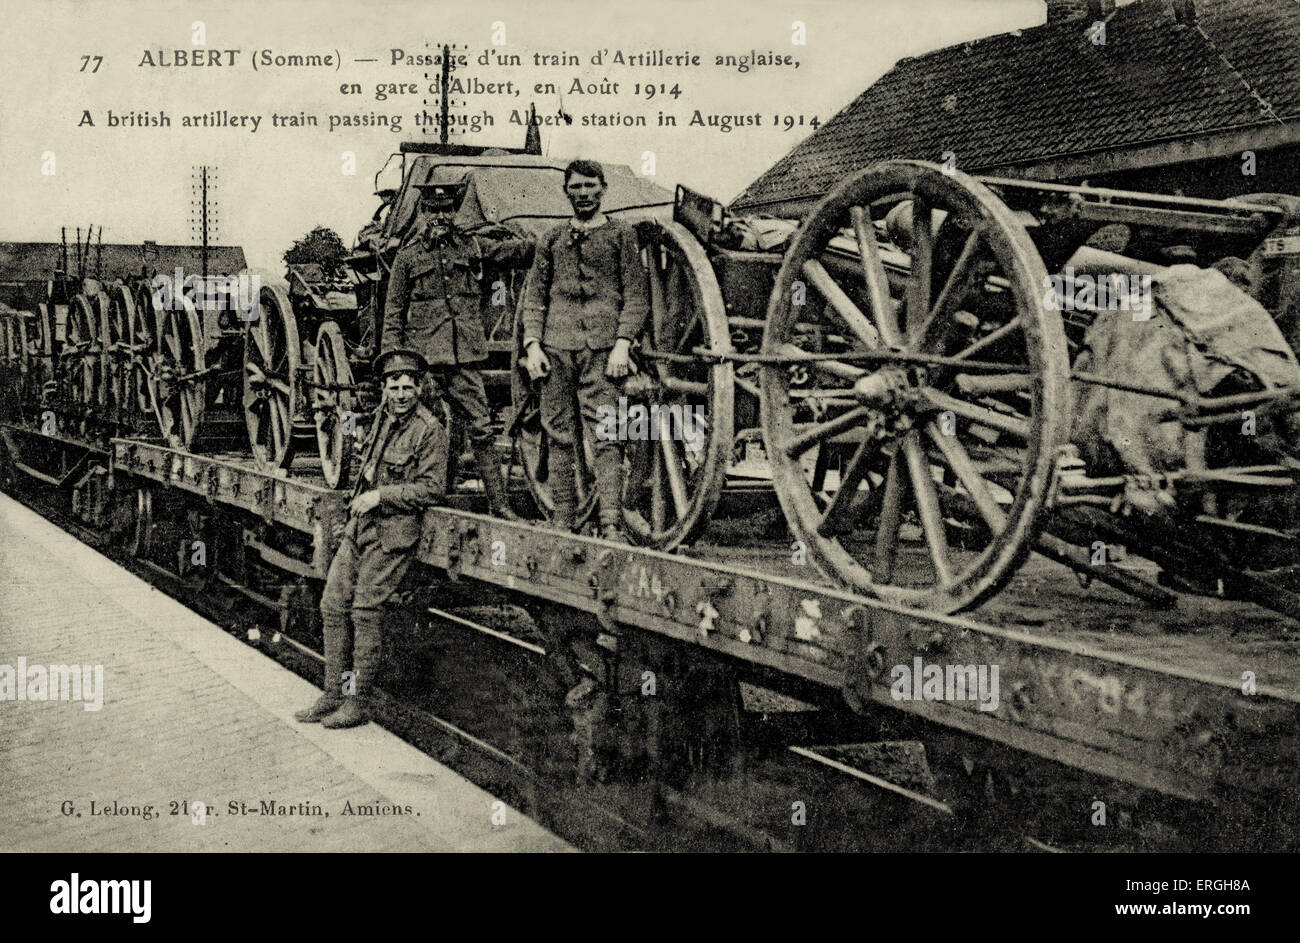 Ersten Weltkrieg: Englische Artillerie Zug passieren Albert, France, August 1914. Französische Postkarte. Bildunterschrift: "ALBERT (Somme): Stockfoto